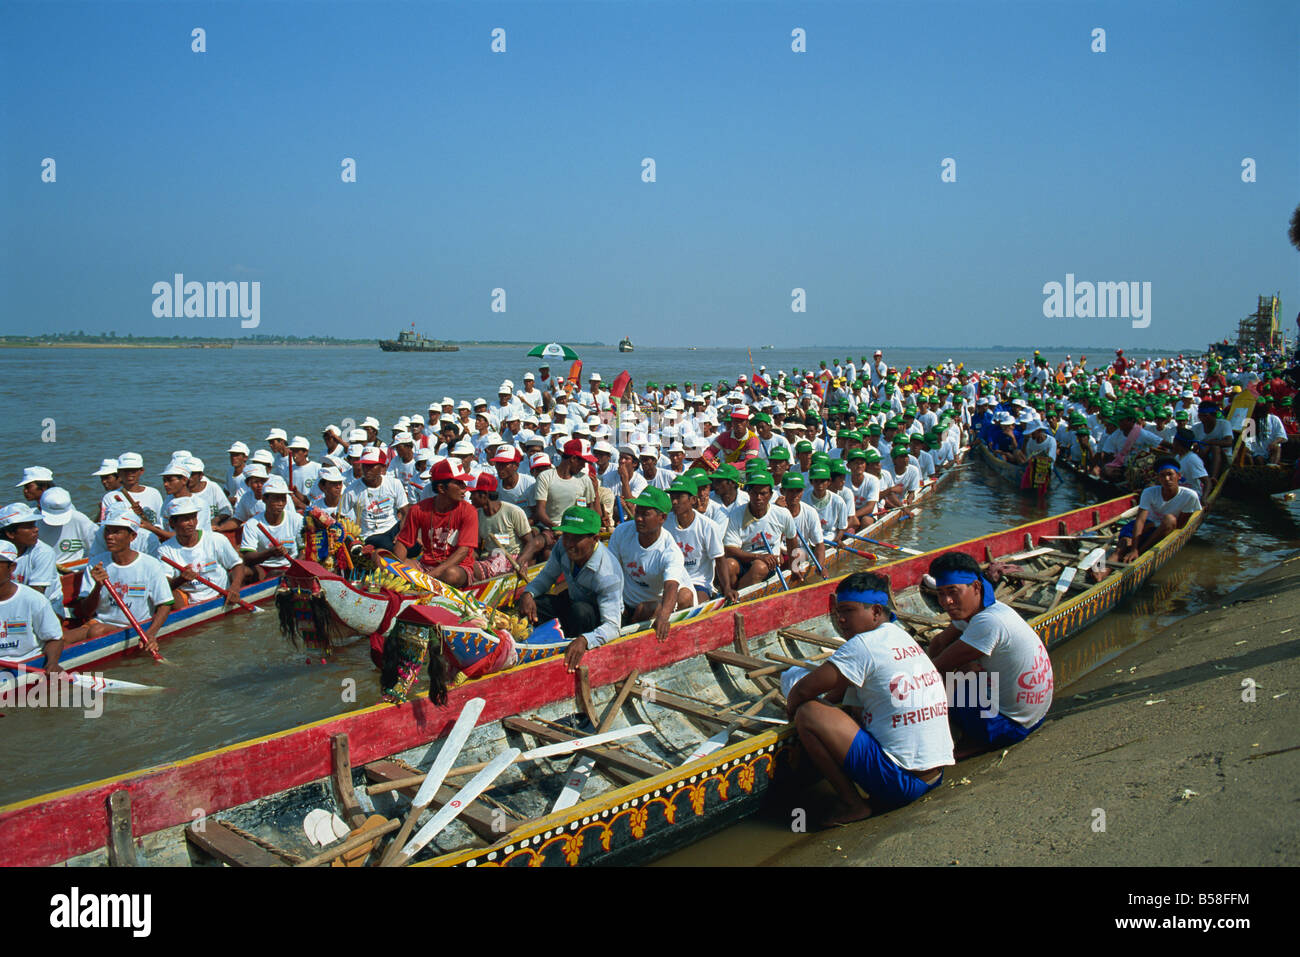 Festival dell'acqua Phnom Penh Cambogia Indocina Asia del sud-est asiatico Foto Stock